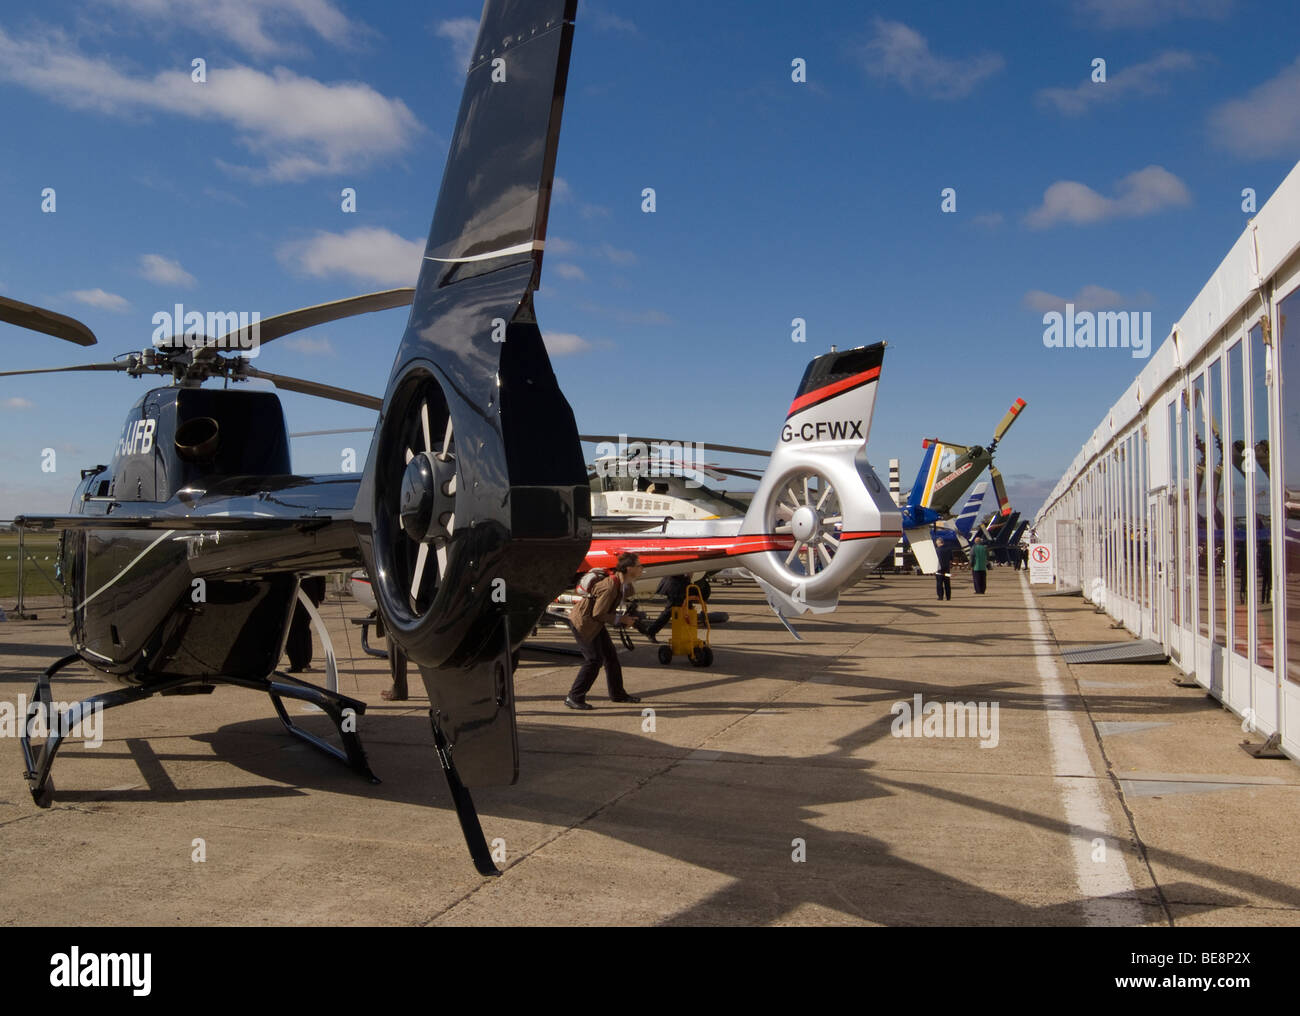 Eurocopter EC120 B Colibri und EC130 B4 Ecureuil Hubschrauber auf Helitech Messe zeigen Duxford Flugplatz Englnd Vereinigtes Königreich UK Stockfoto